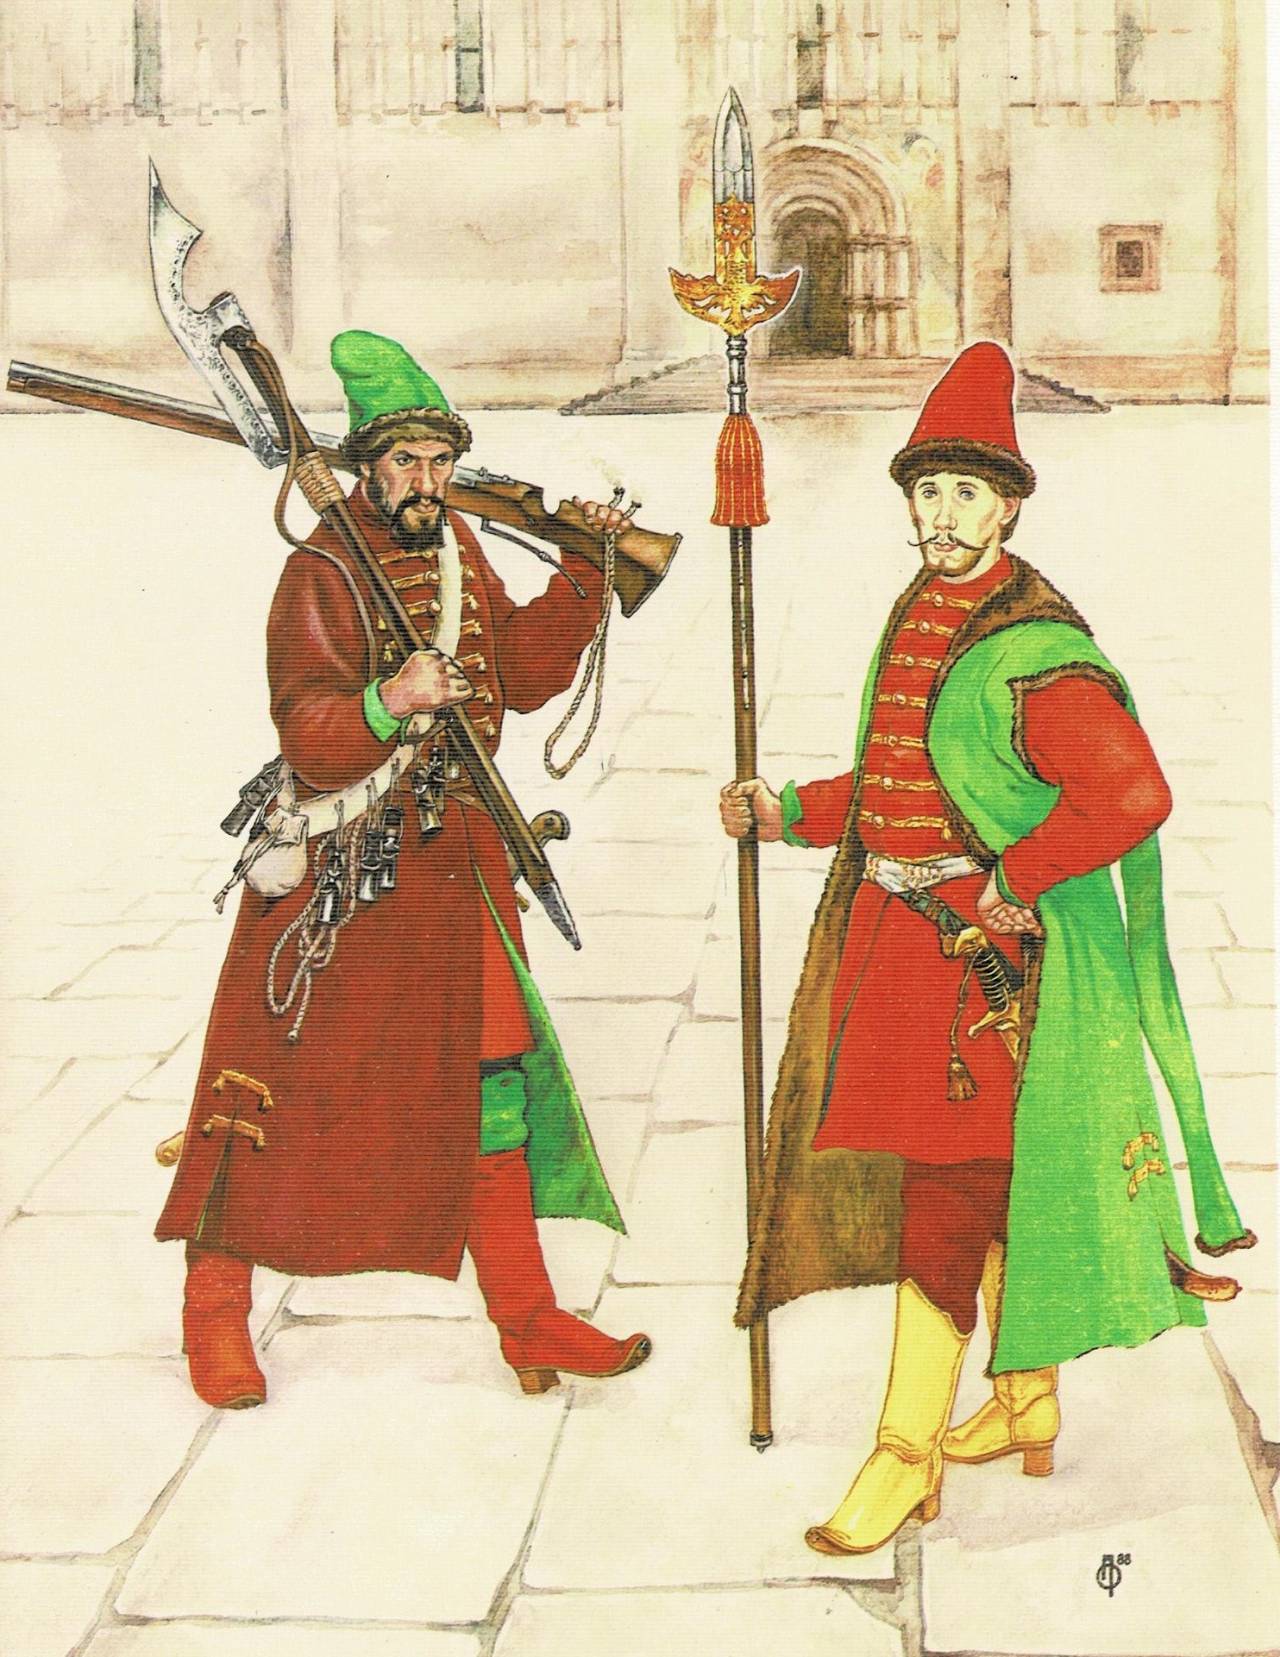 Стрельцы служилые люди 17 века